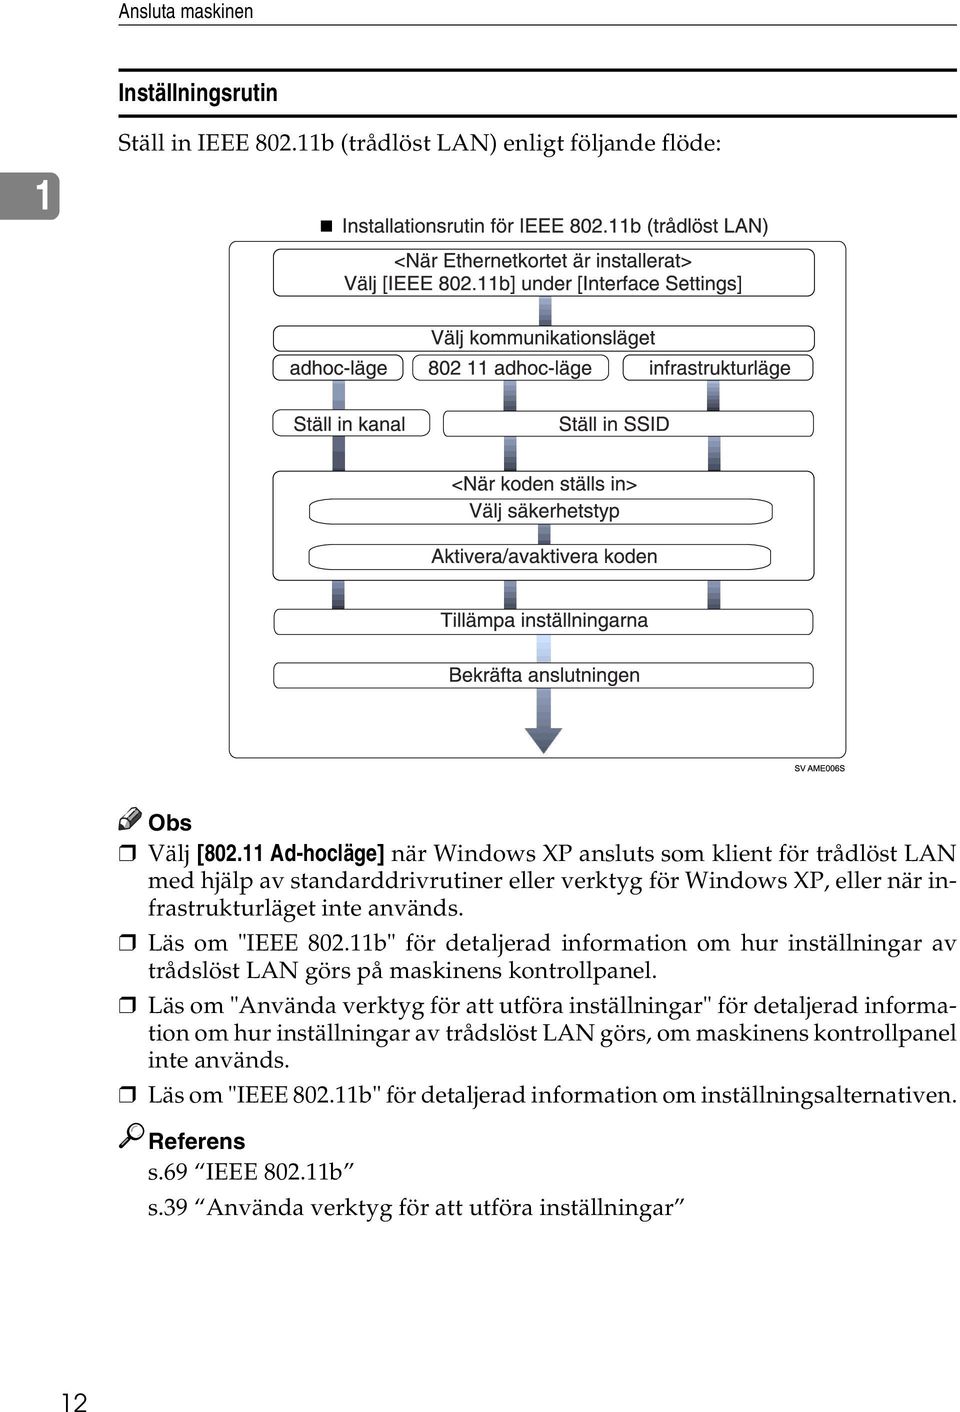 Läs om "IEEE 802.11b" för detaljerad information om hur inställningar av trådslöst LAN görs på maskinens kontrollpanel.